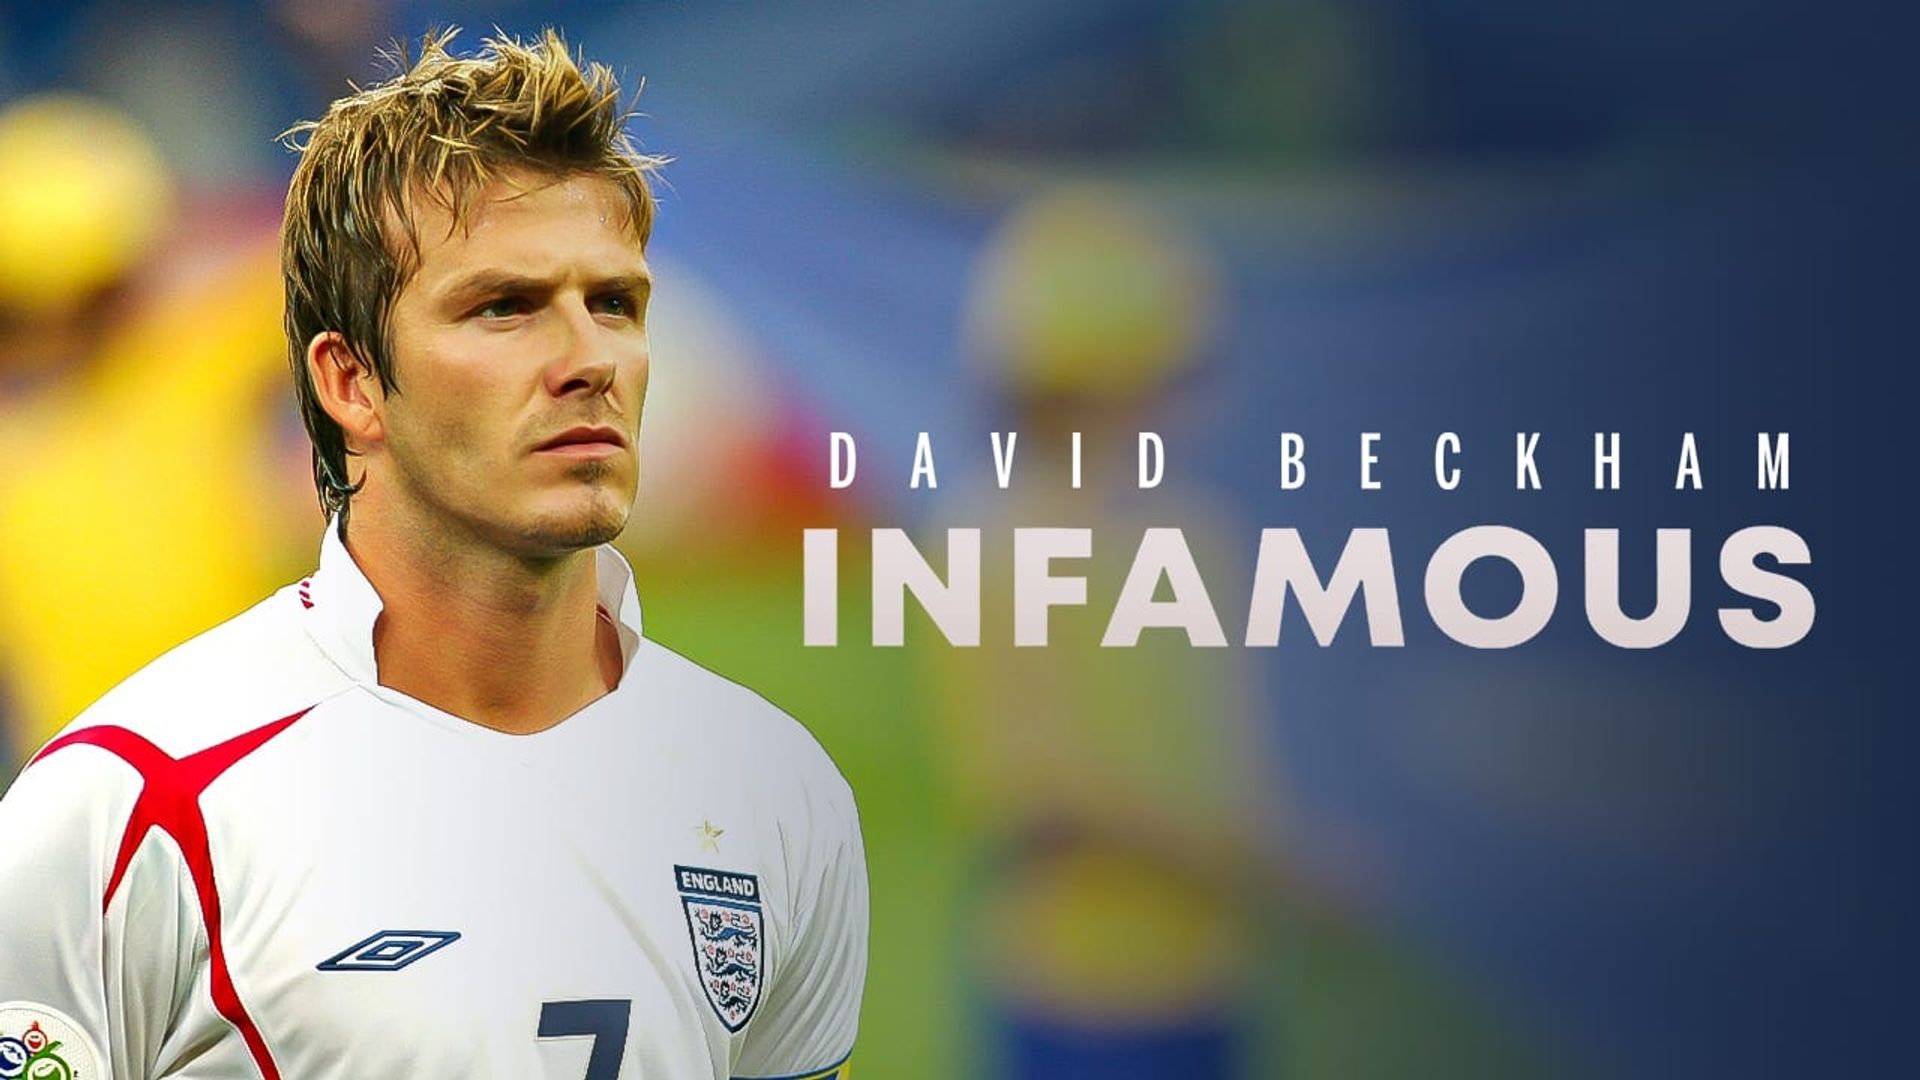 David Beckham: Infamous background